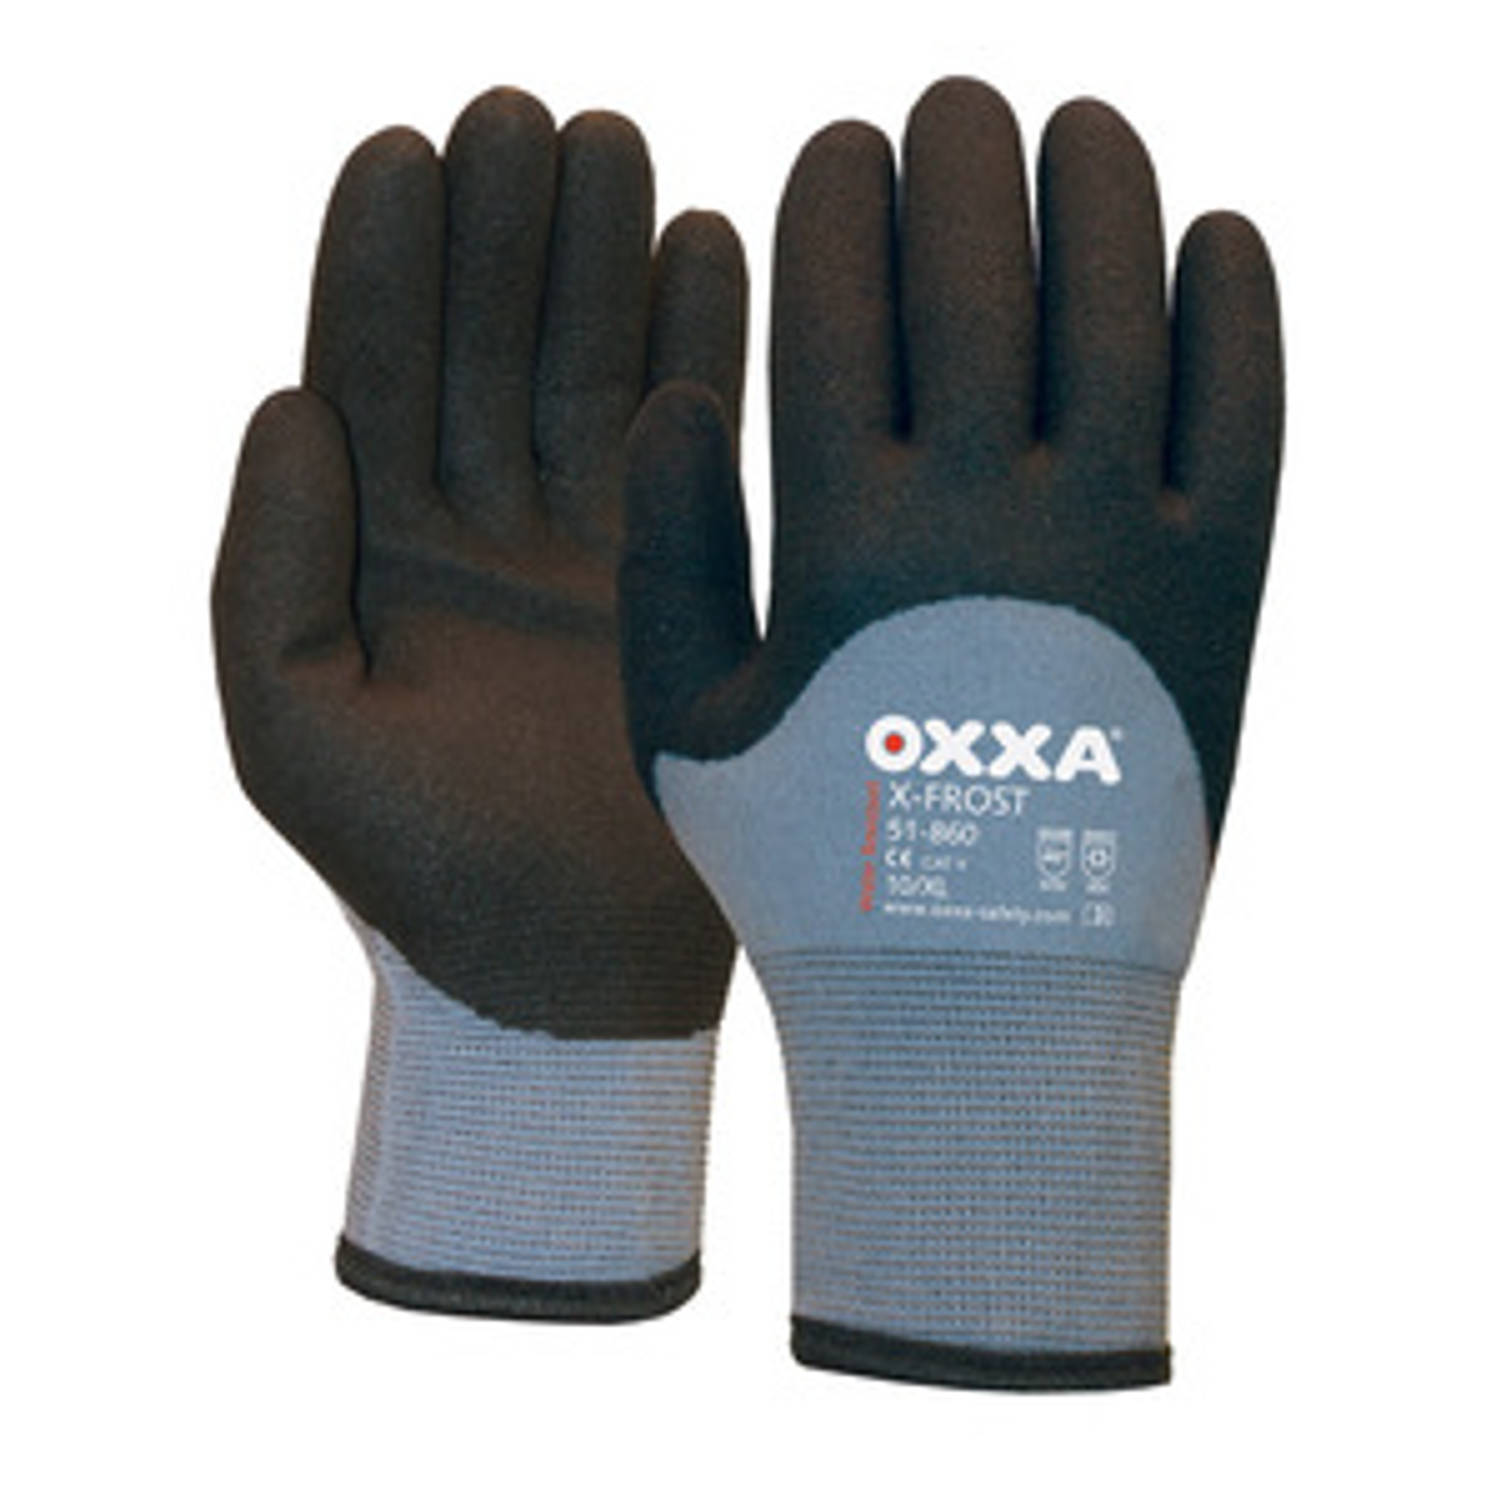 Oxxa handschoenen X-frost 51-860 grijs-zwart (maat 11) XXL